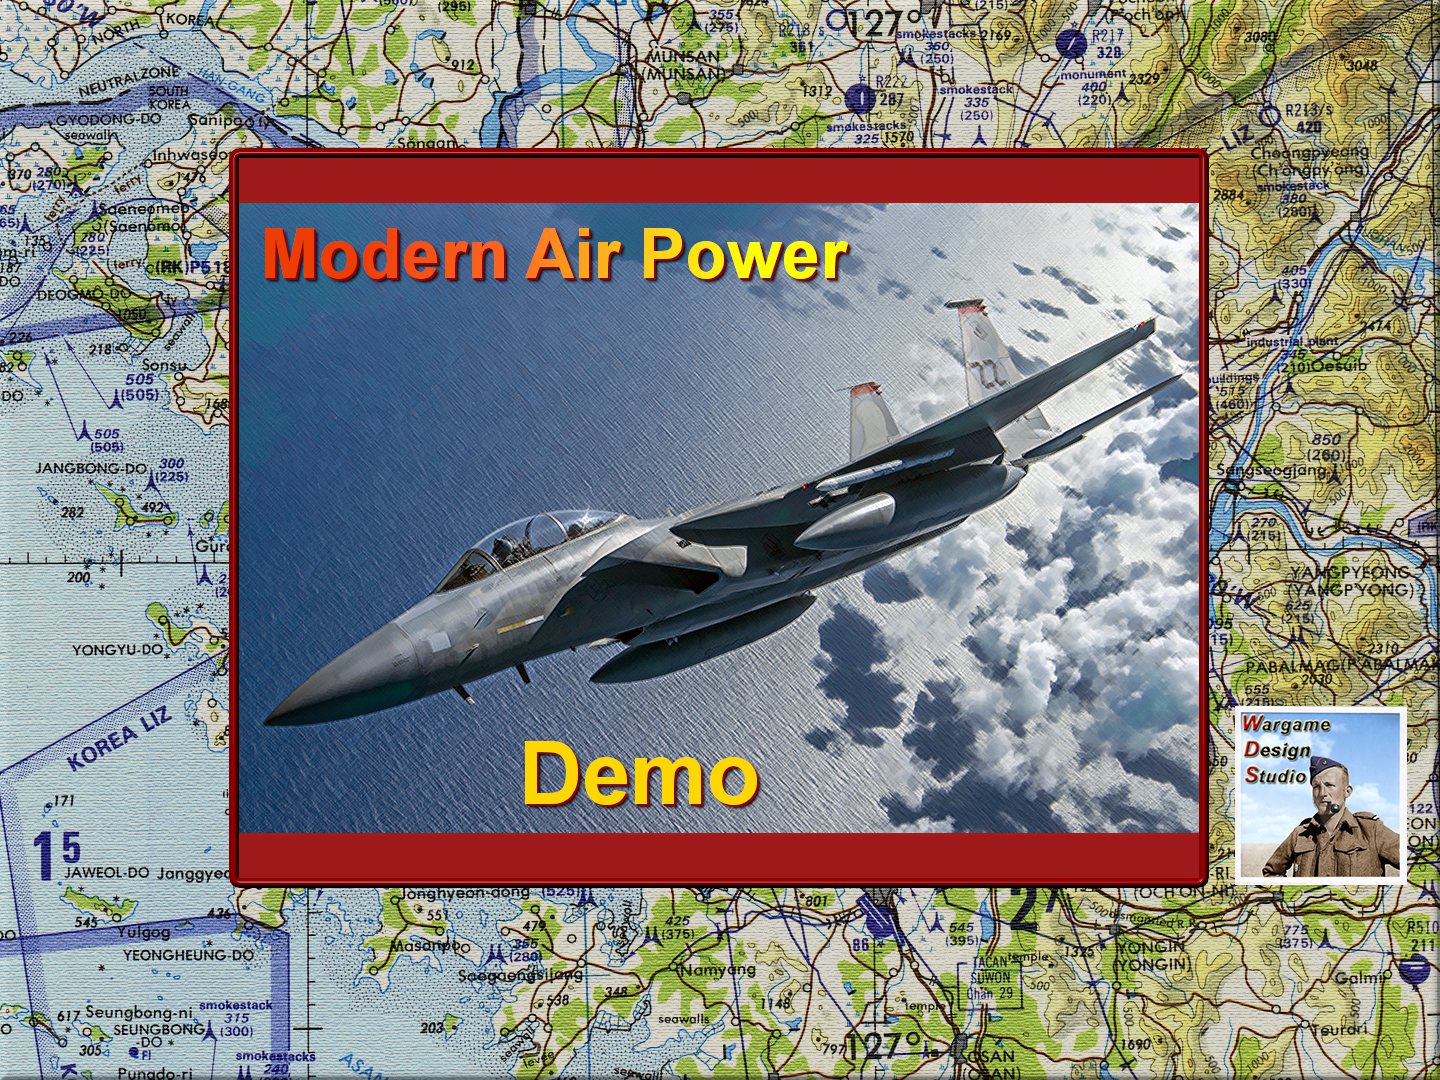 Modern Air Power Demo